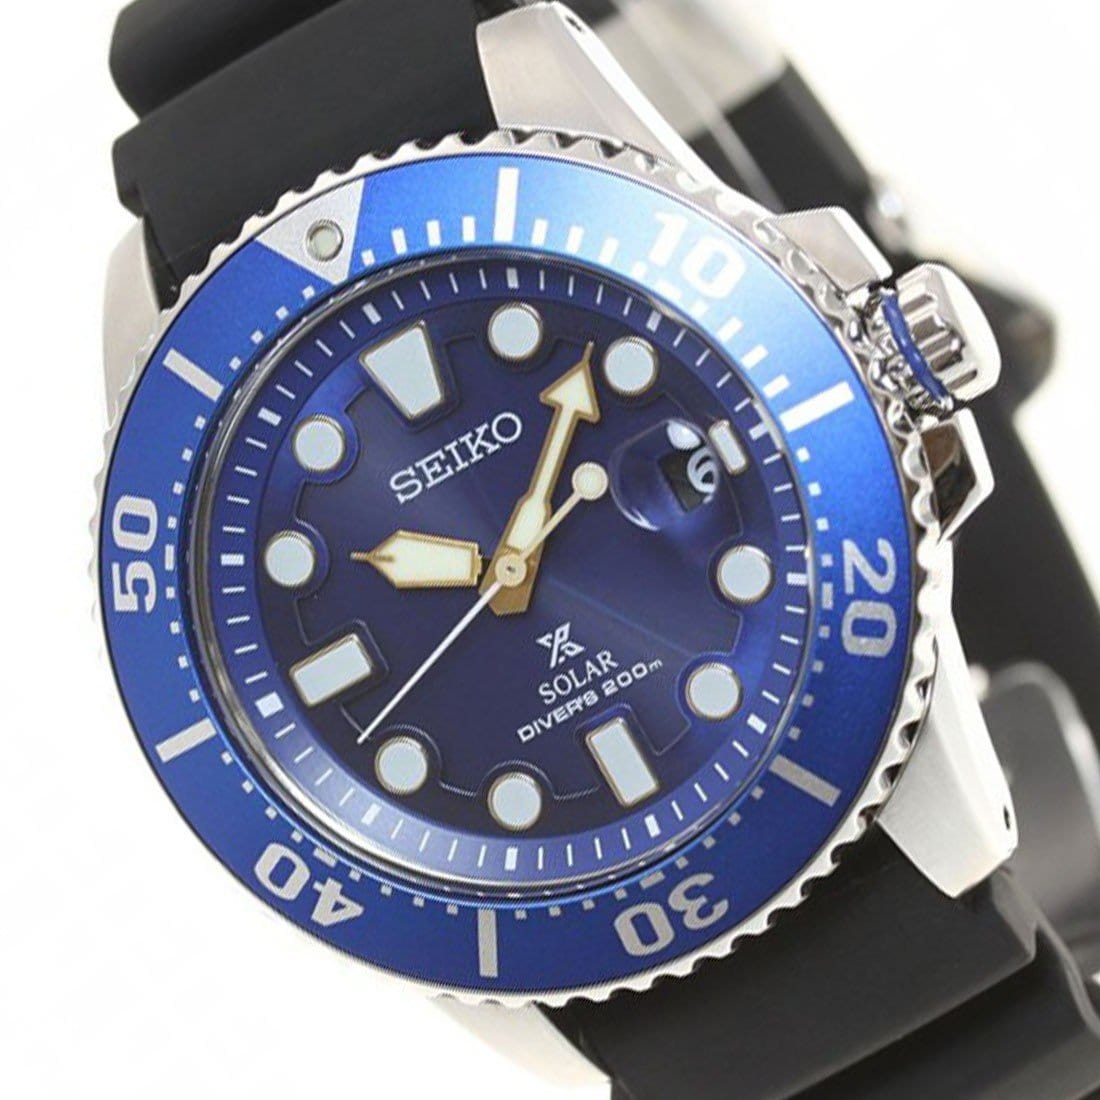 SBDJ021 Seiko Prospex JDM Solar Powered Watch